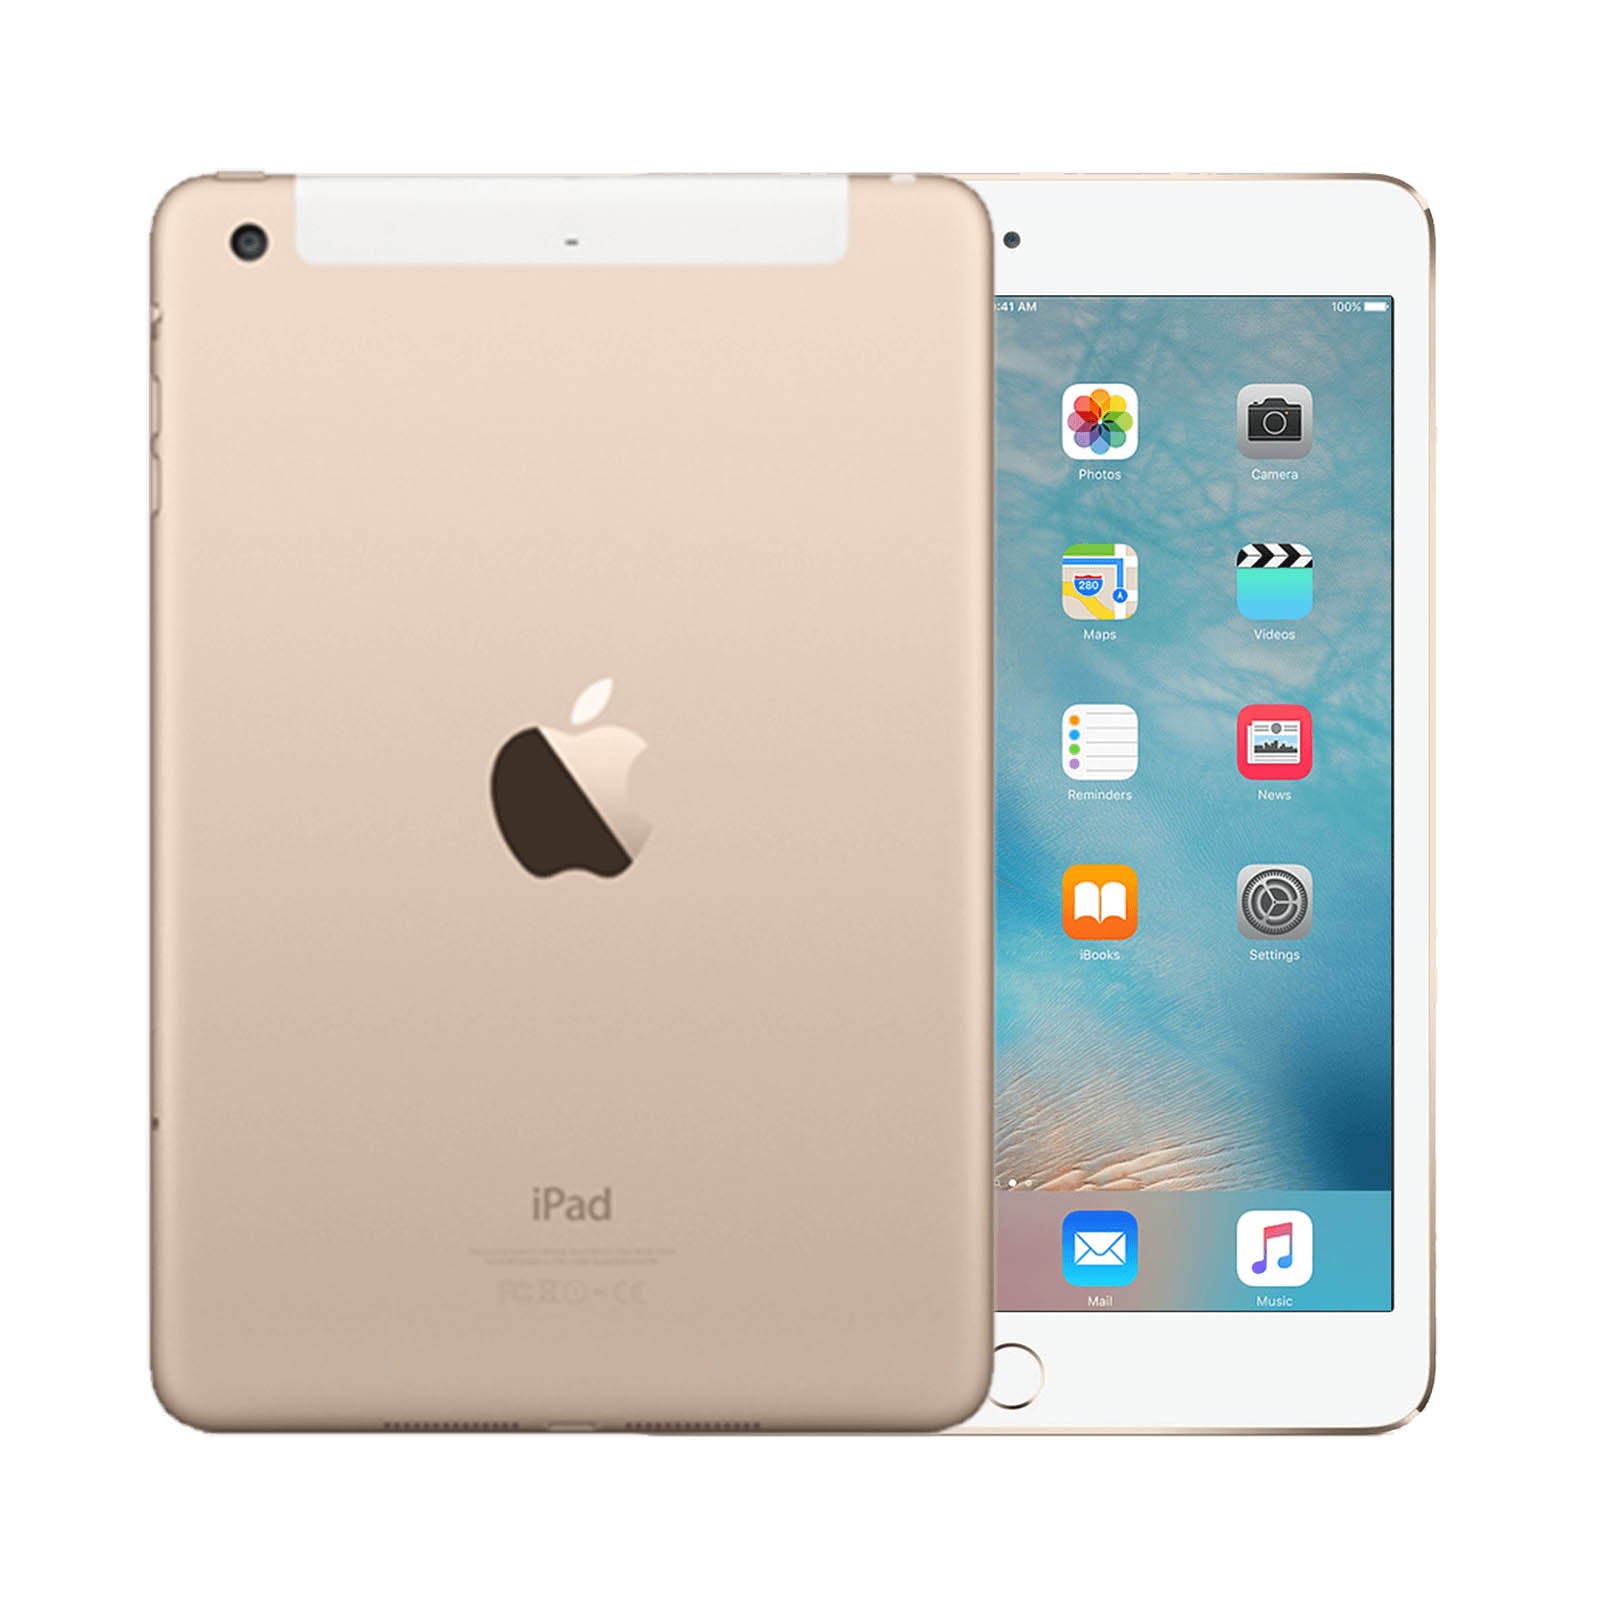 Apple iPad mini 3 16GB Gold Pristine- Unlocked